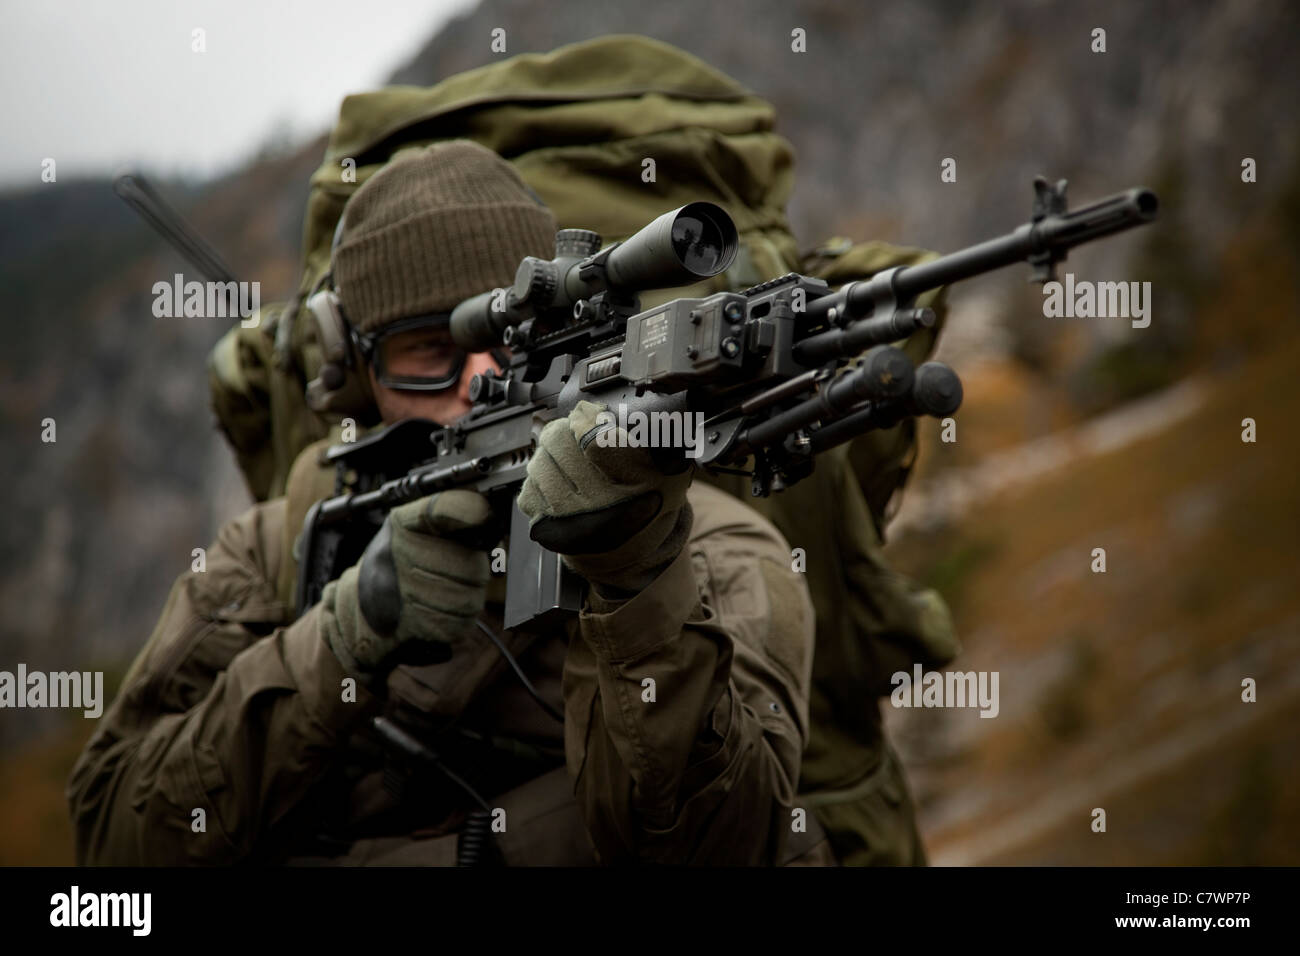 Soldat des forces spéciales américaines armé d'un fusil de combat amélioré MK14. Banque D'Images